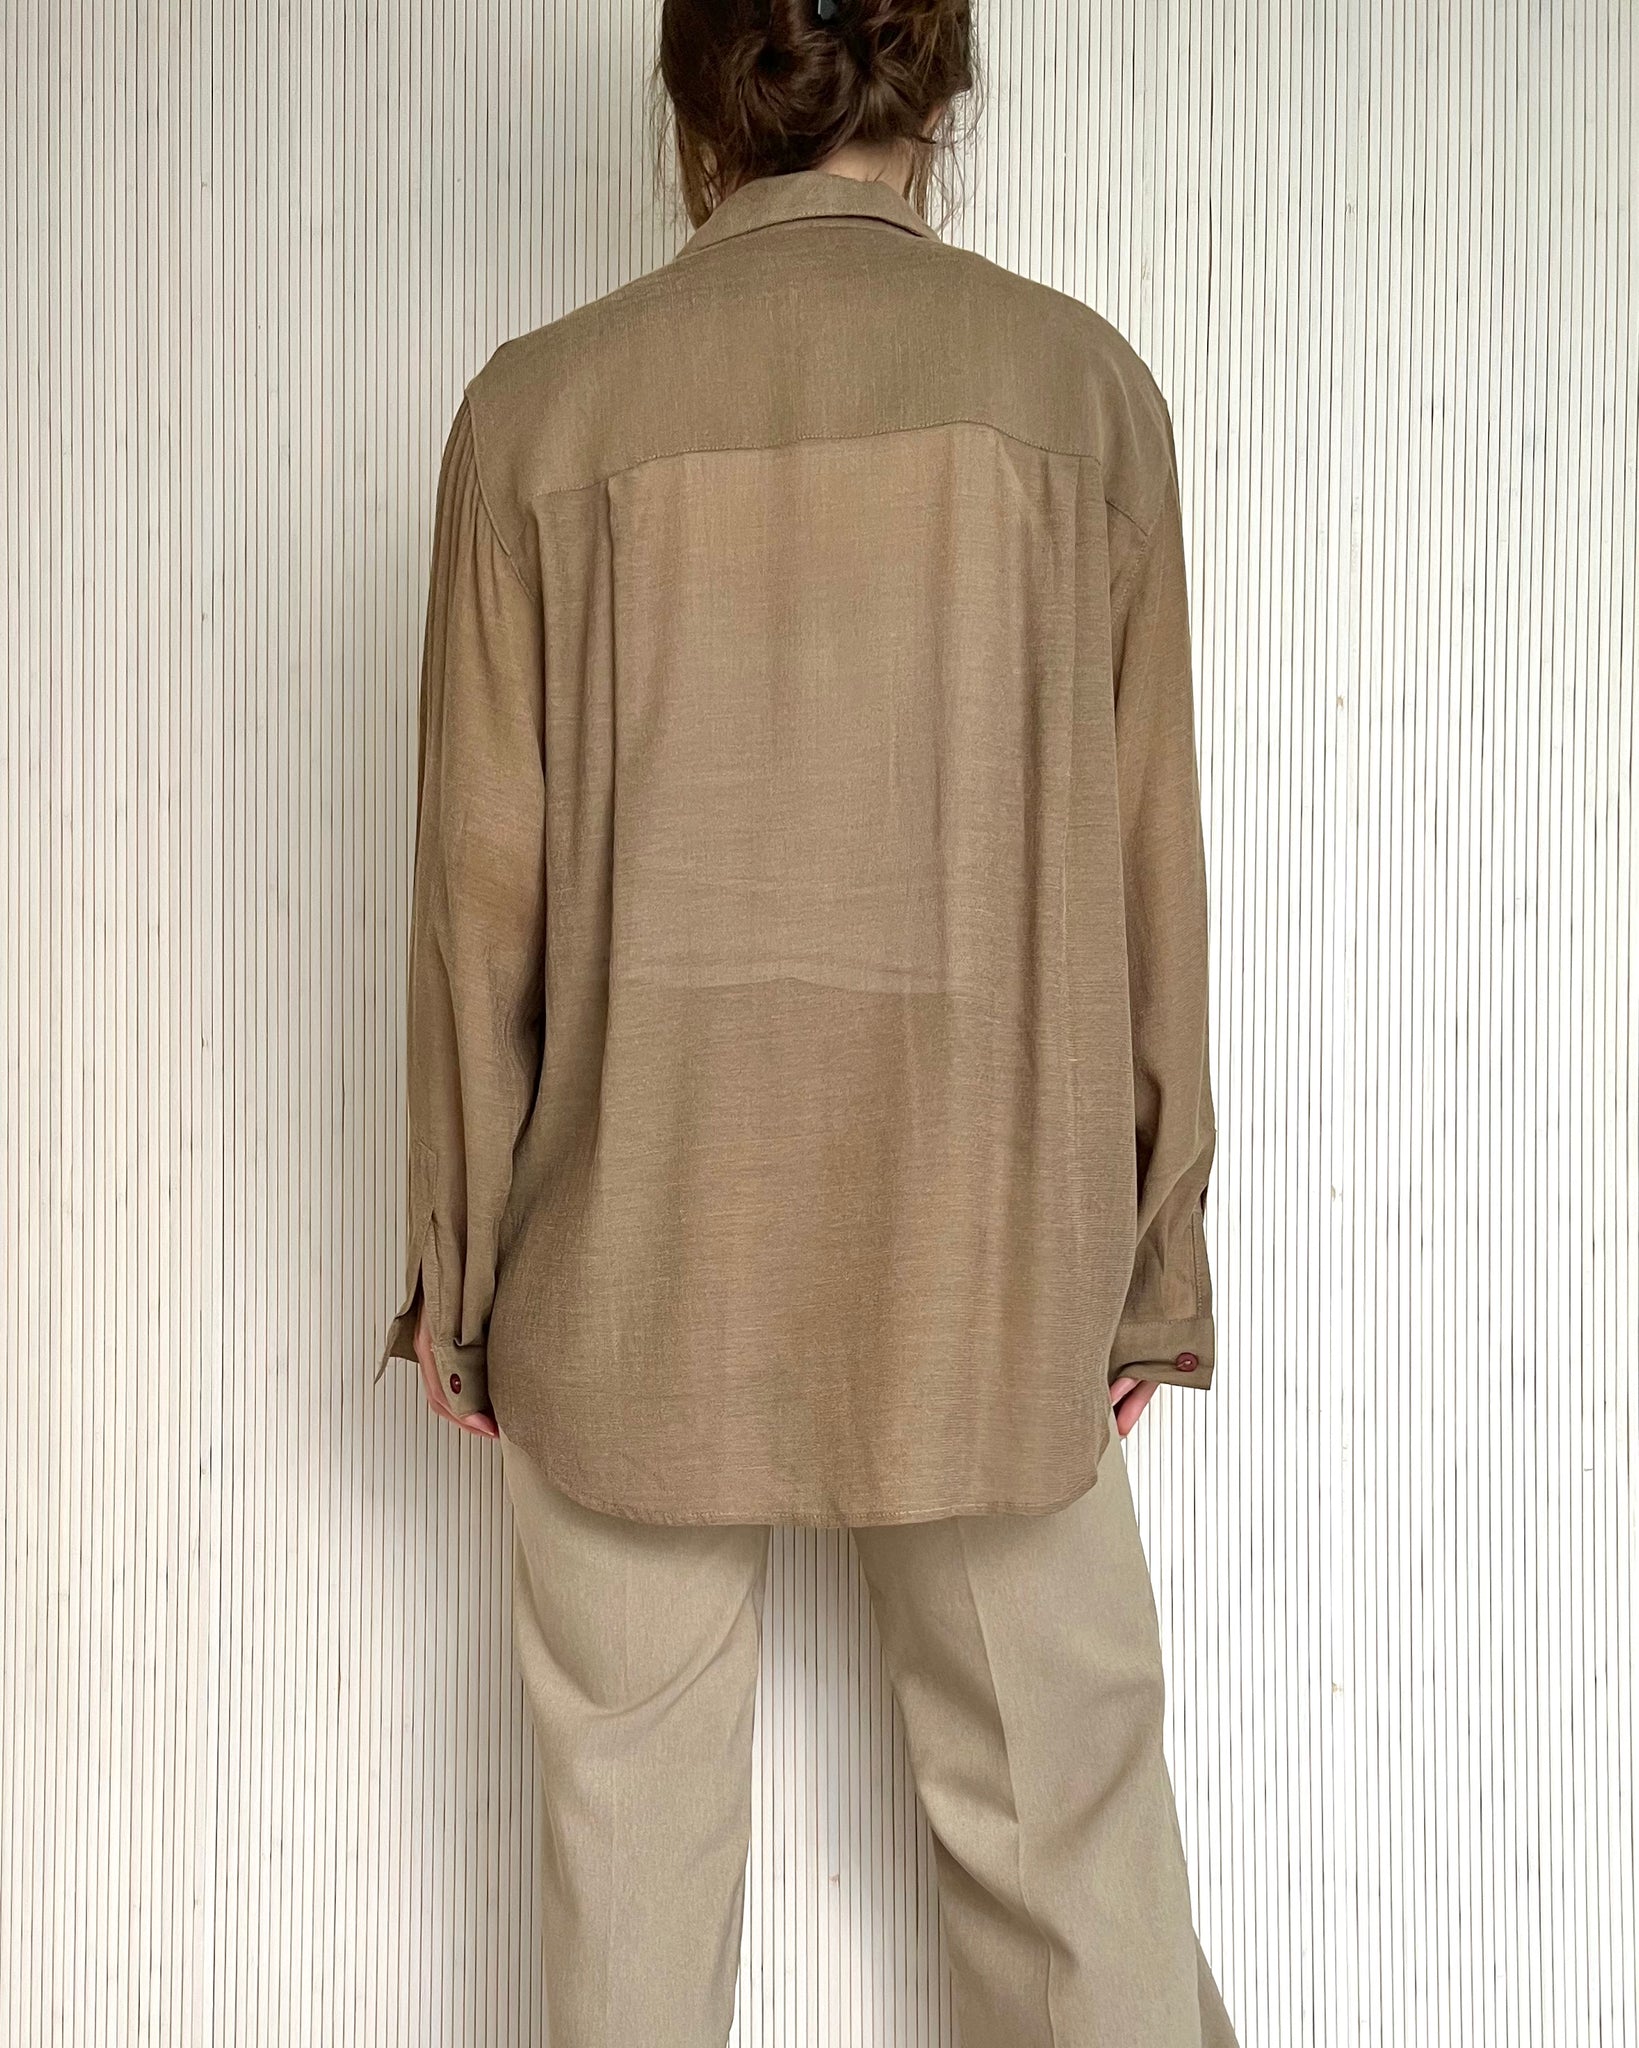 90s Tan Sheer Shirt (Size M)